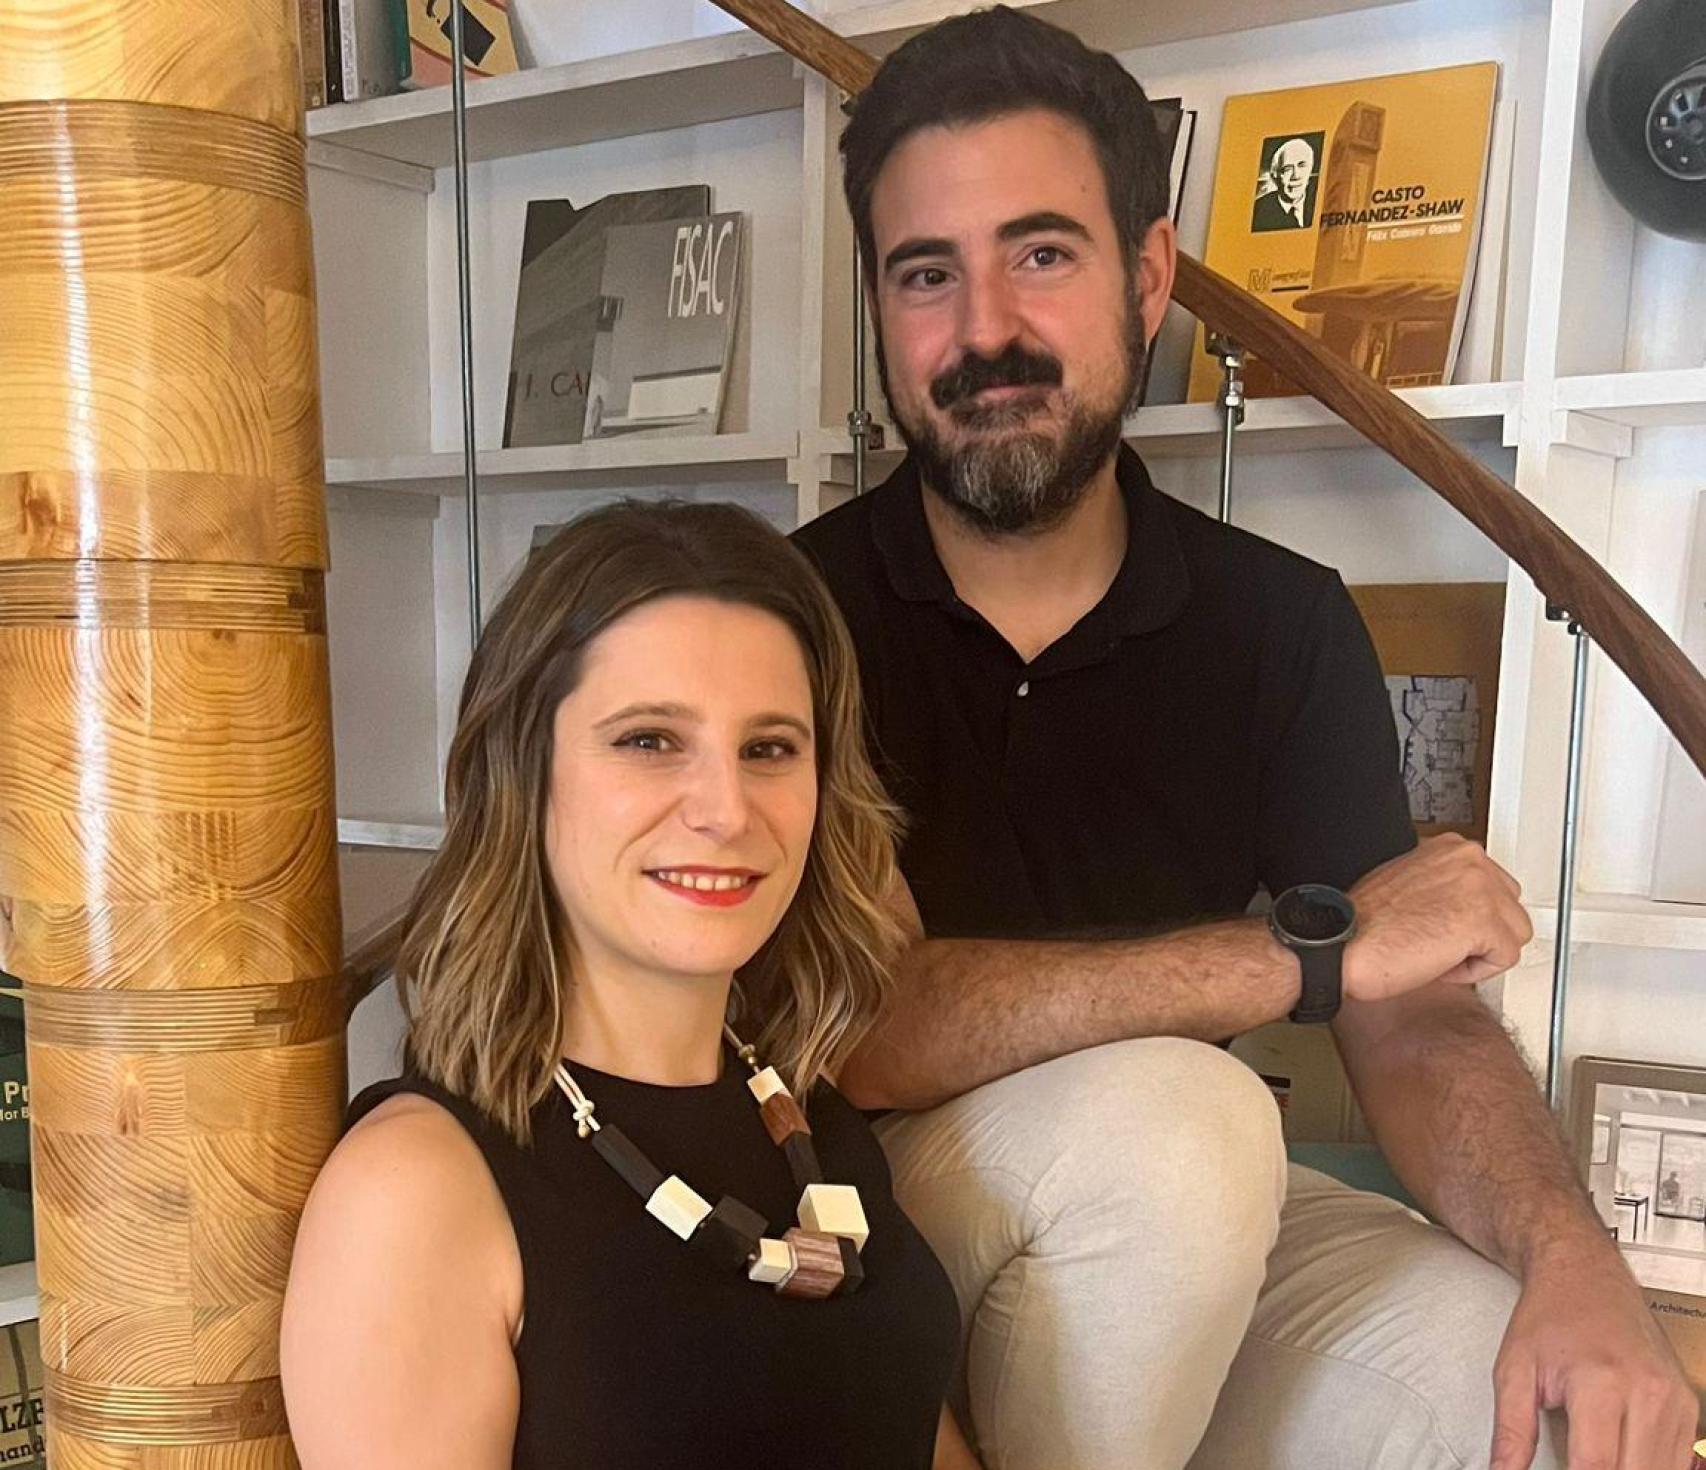 Natalia Rodríguez y Joaquín Vargas posan en la escalera de caracol que según el jurado de los premios “transforma una carbonería en una vivienda de hoy”.